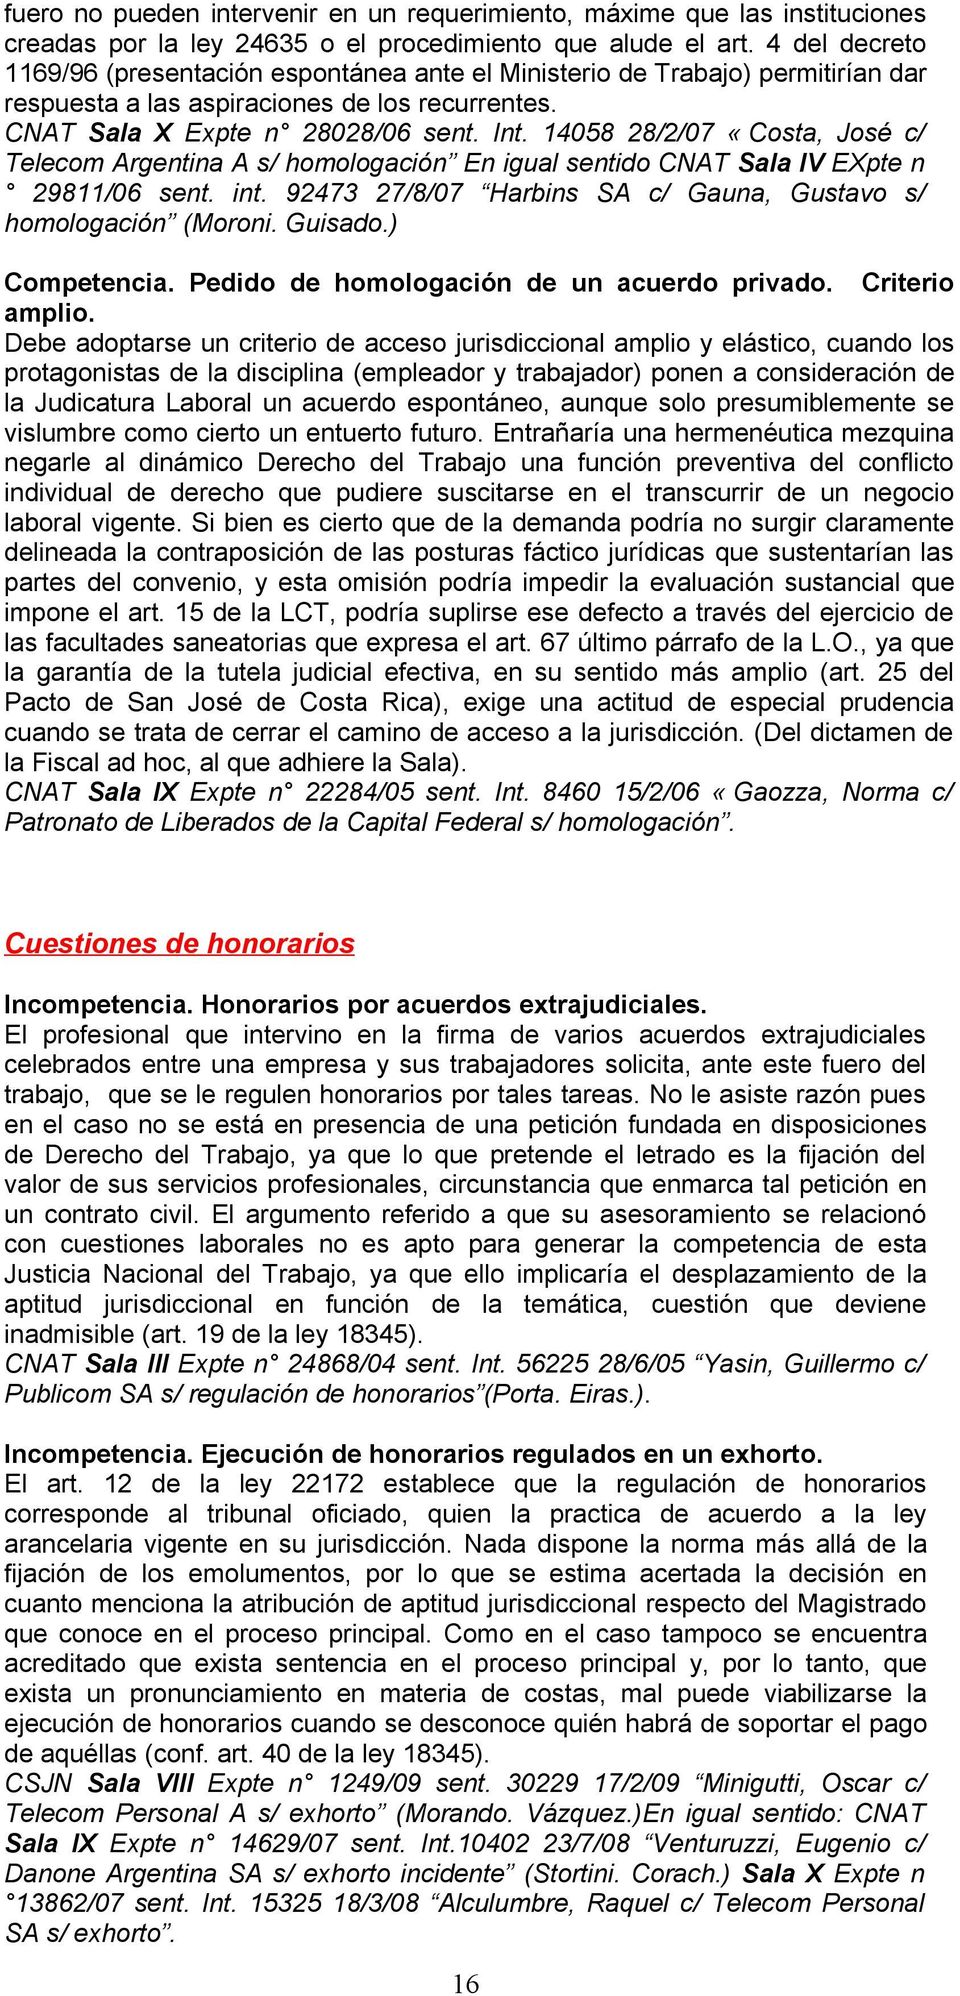 14058 28/2/07 «Costa, José c/ Telecom Argentina A s/ homologación En igual sentido CNAT Sala IV EXpte n 29811/06 sent. int. 92473 27/8/07 Harbins SA c/ Gauna, Gustavo s/ homologación (Moroni. Guisado.